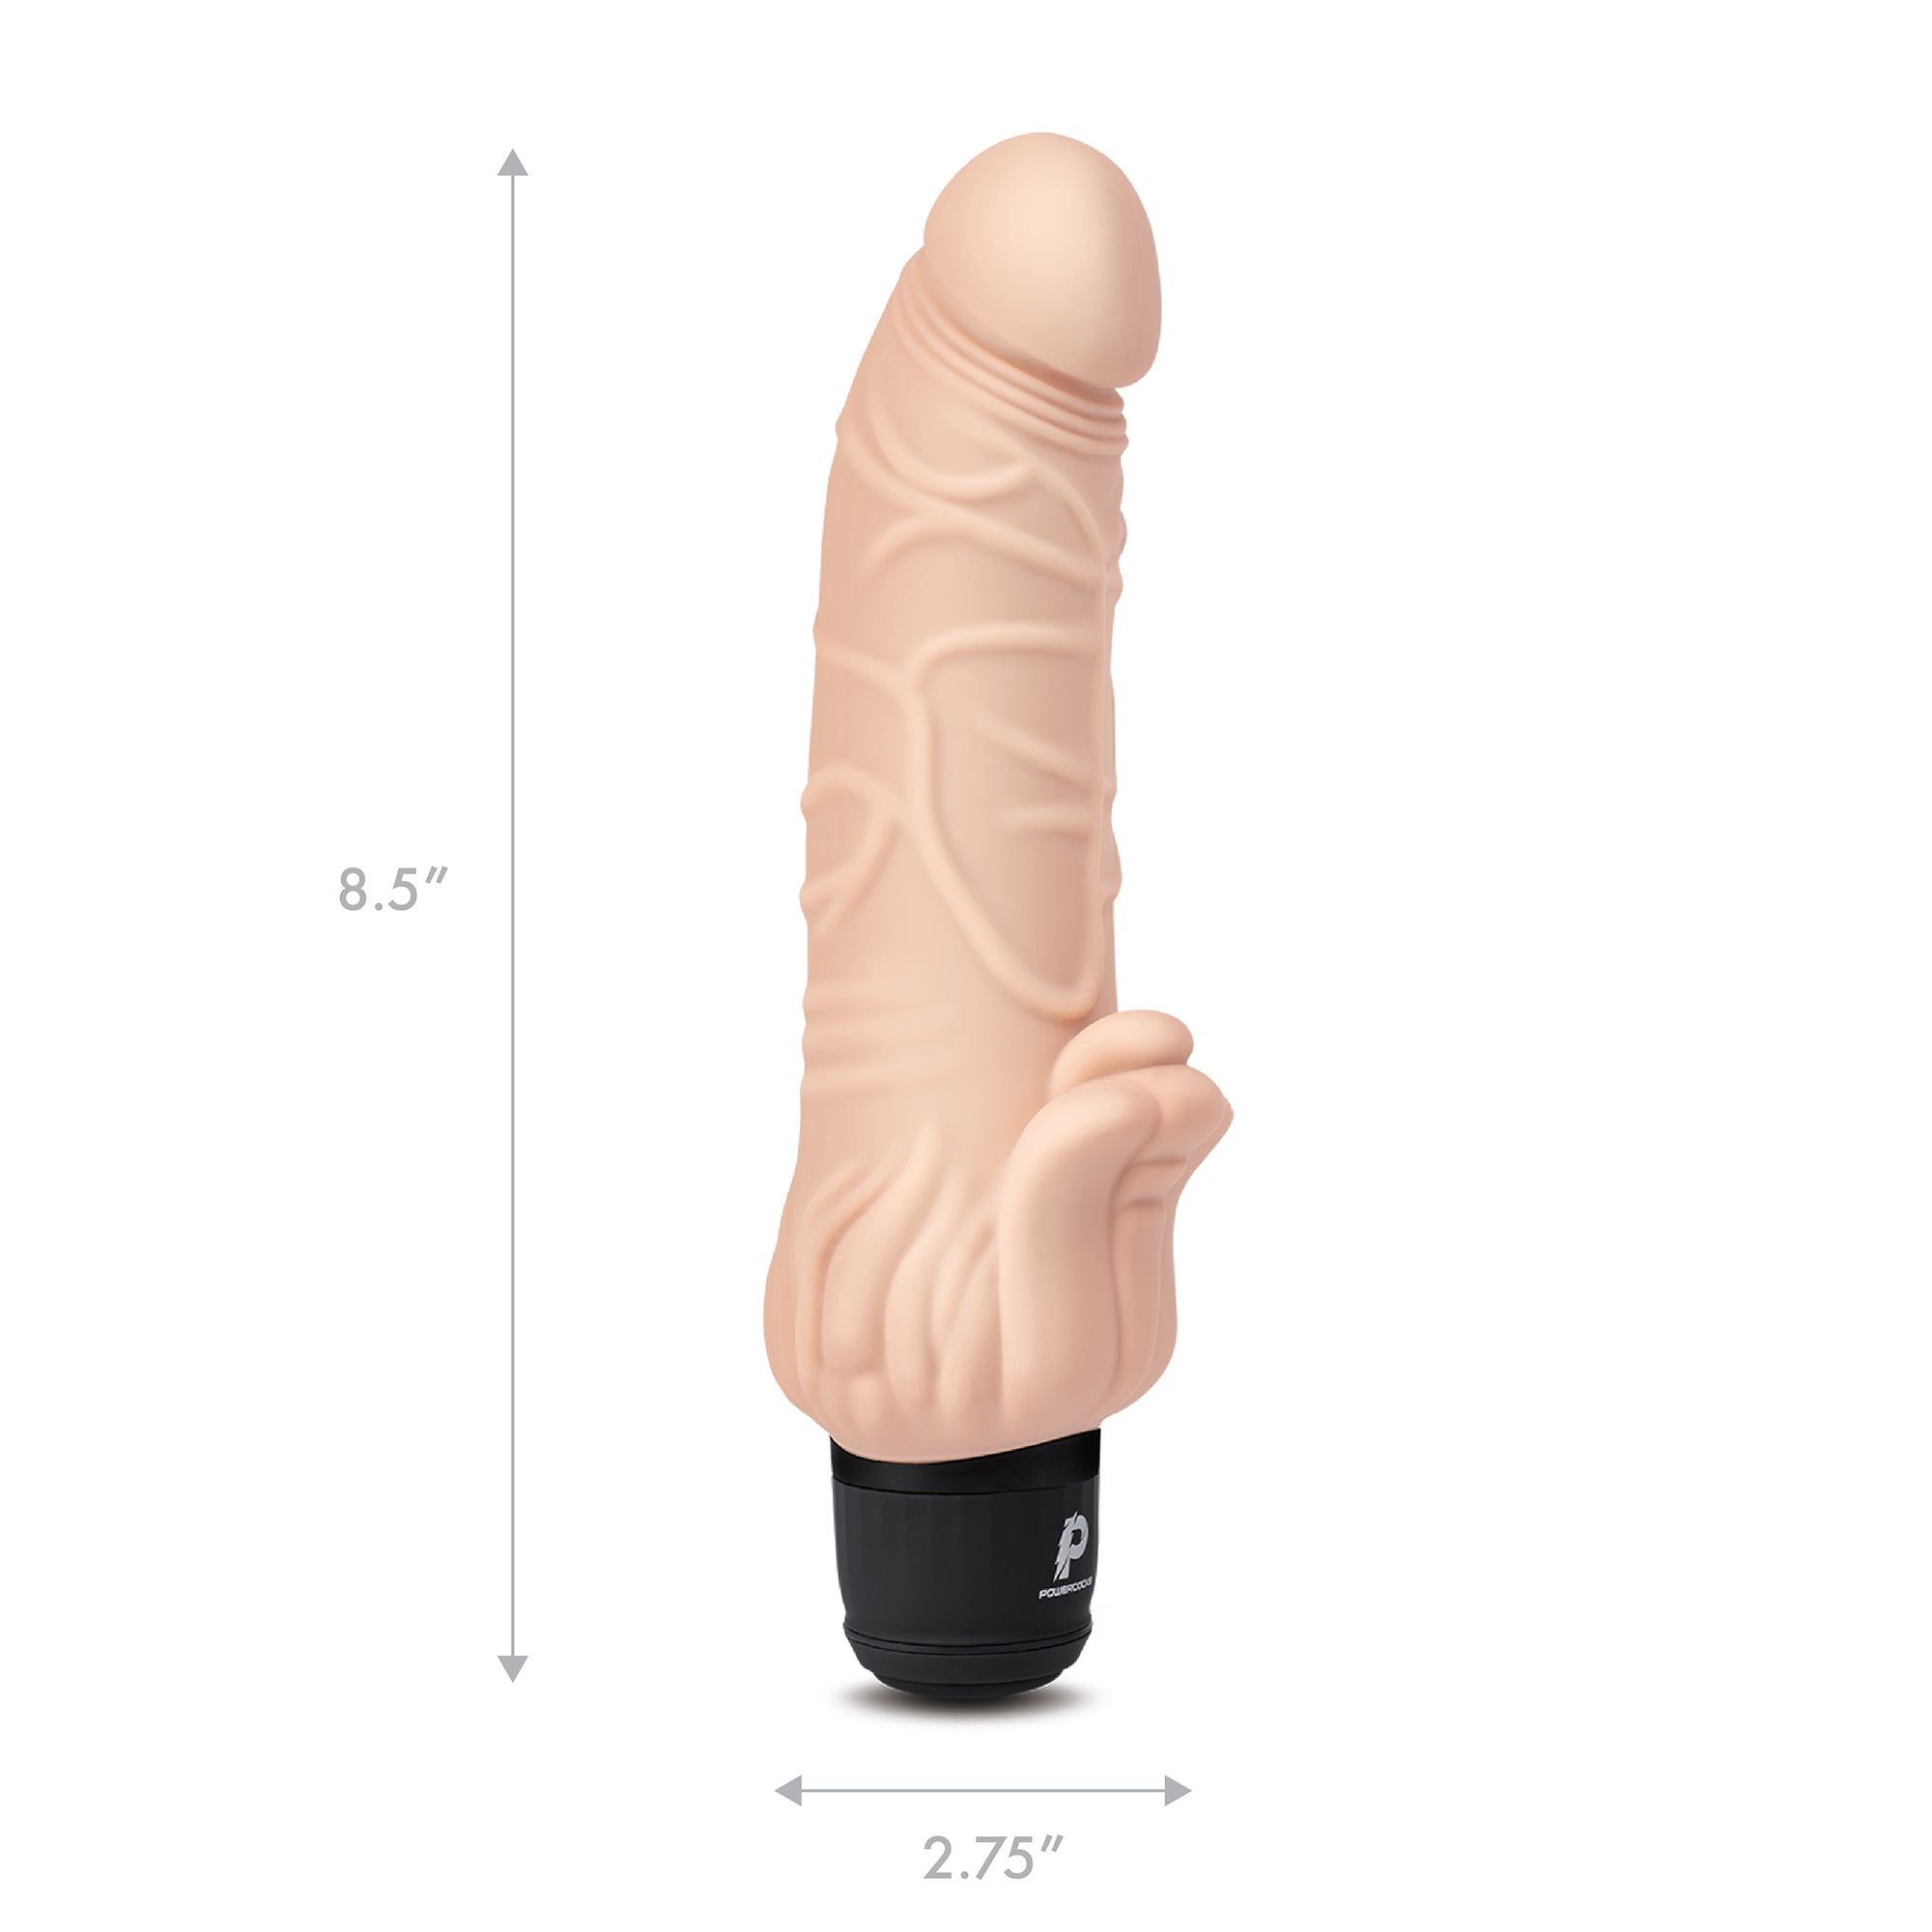 7" Realistic Vibrator with Clitoral Stimulator Nude